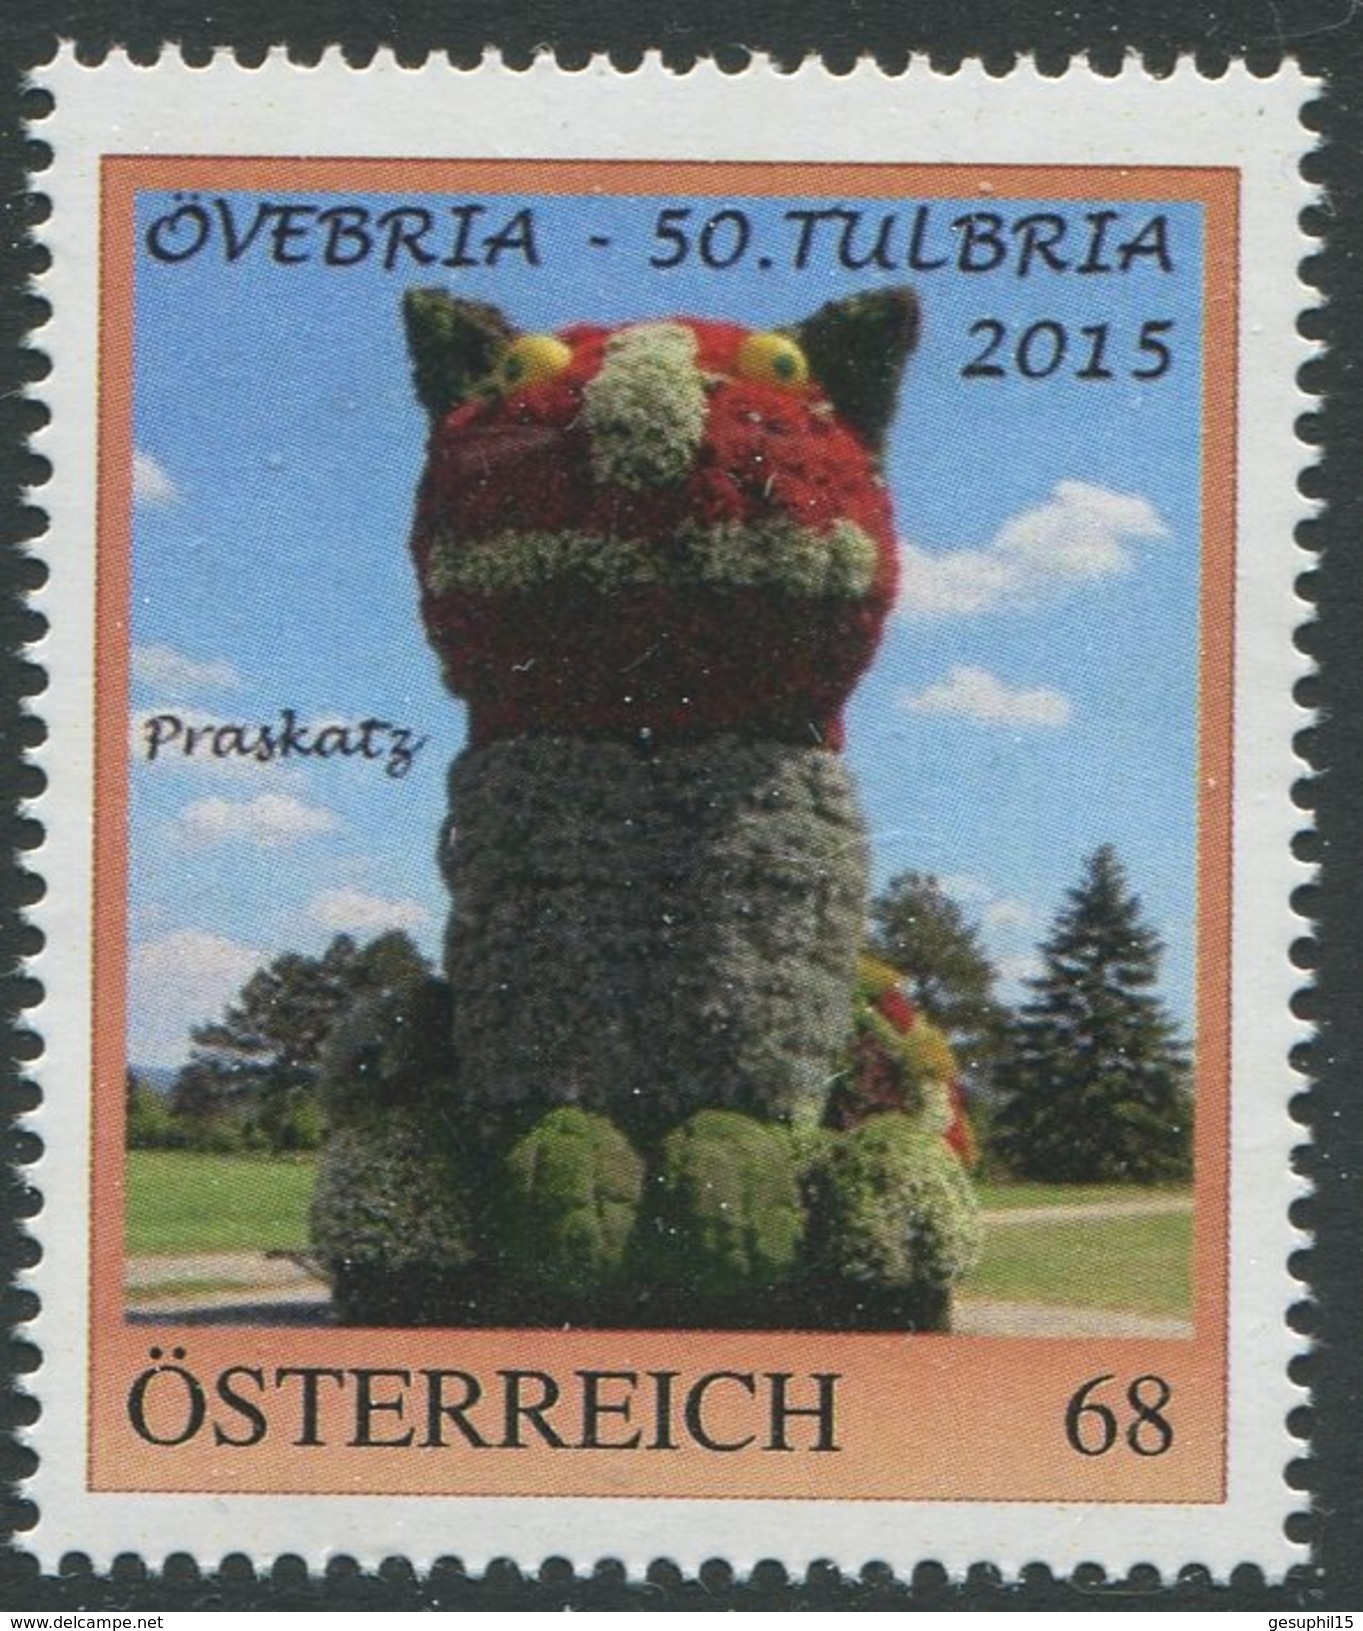 ÖSTERREICH / 8113957 / ÖVEBRIA - 50. TULBRIA 2015 / Postfrisch / ** / MNH - Personalisierte Briefmarken